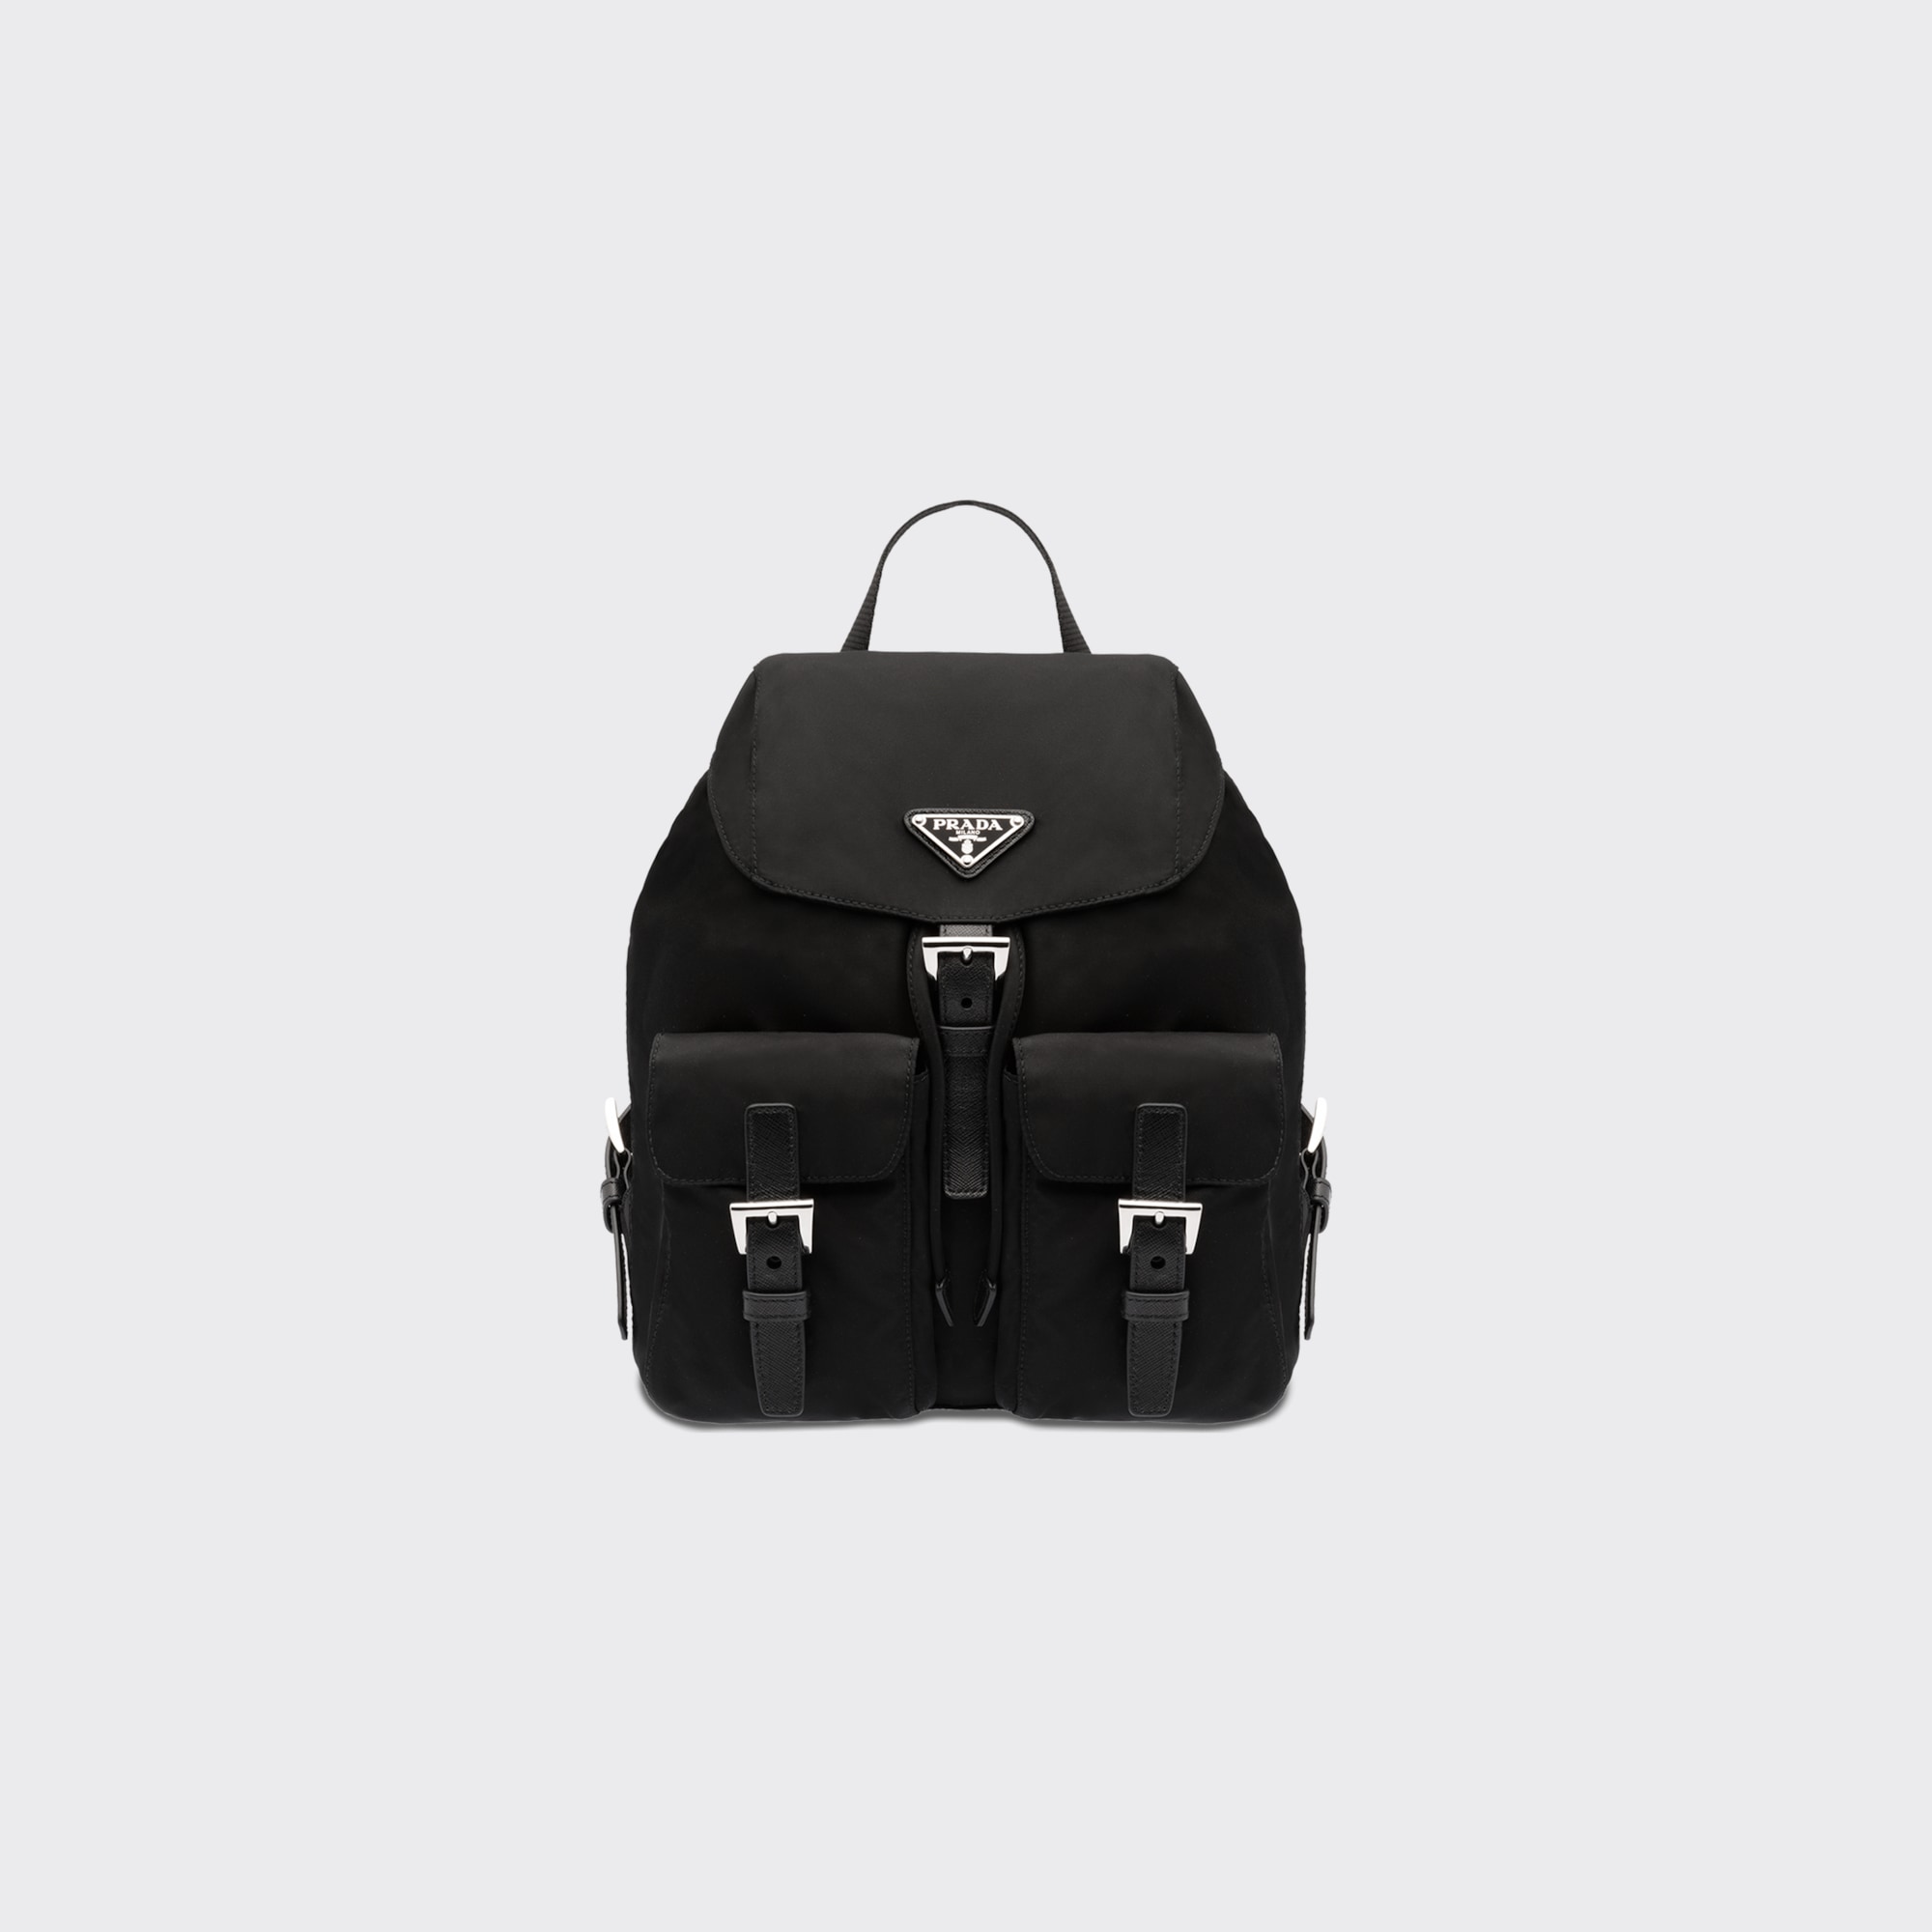 AliciaShop NEW Prada Small Saffiano Leather Prada Monochrome Bag